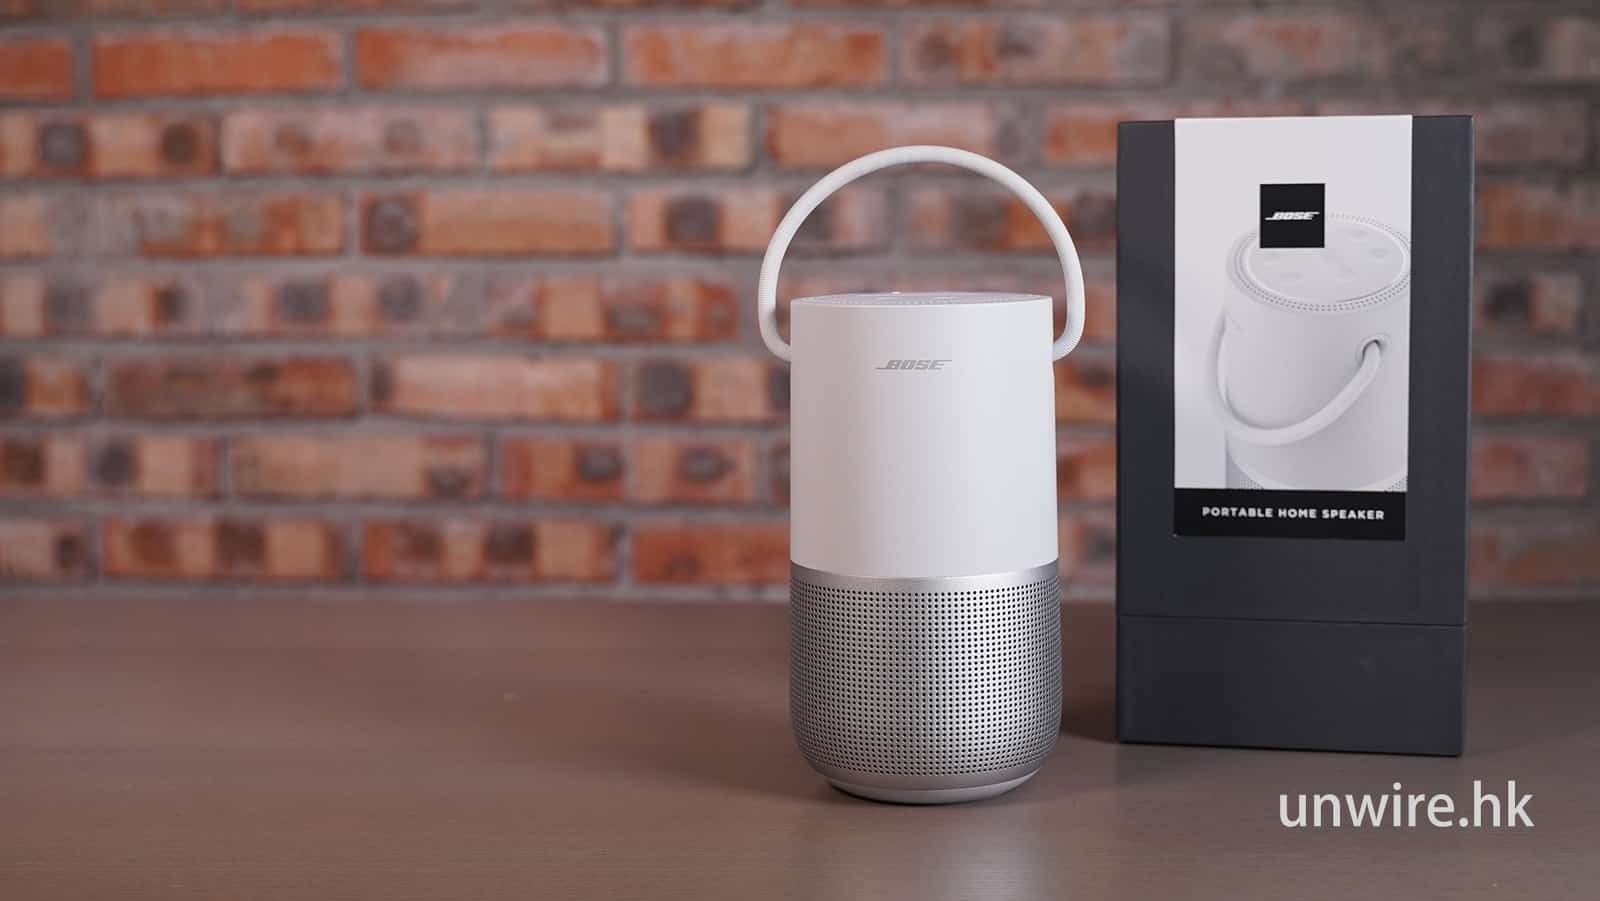 評測】Bose Portable Home Speaker 同結構中更強低音- 香港unwire.hk